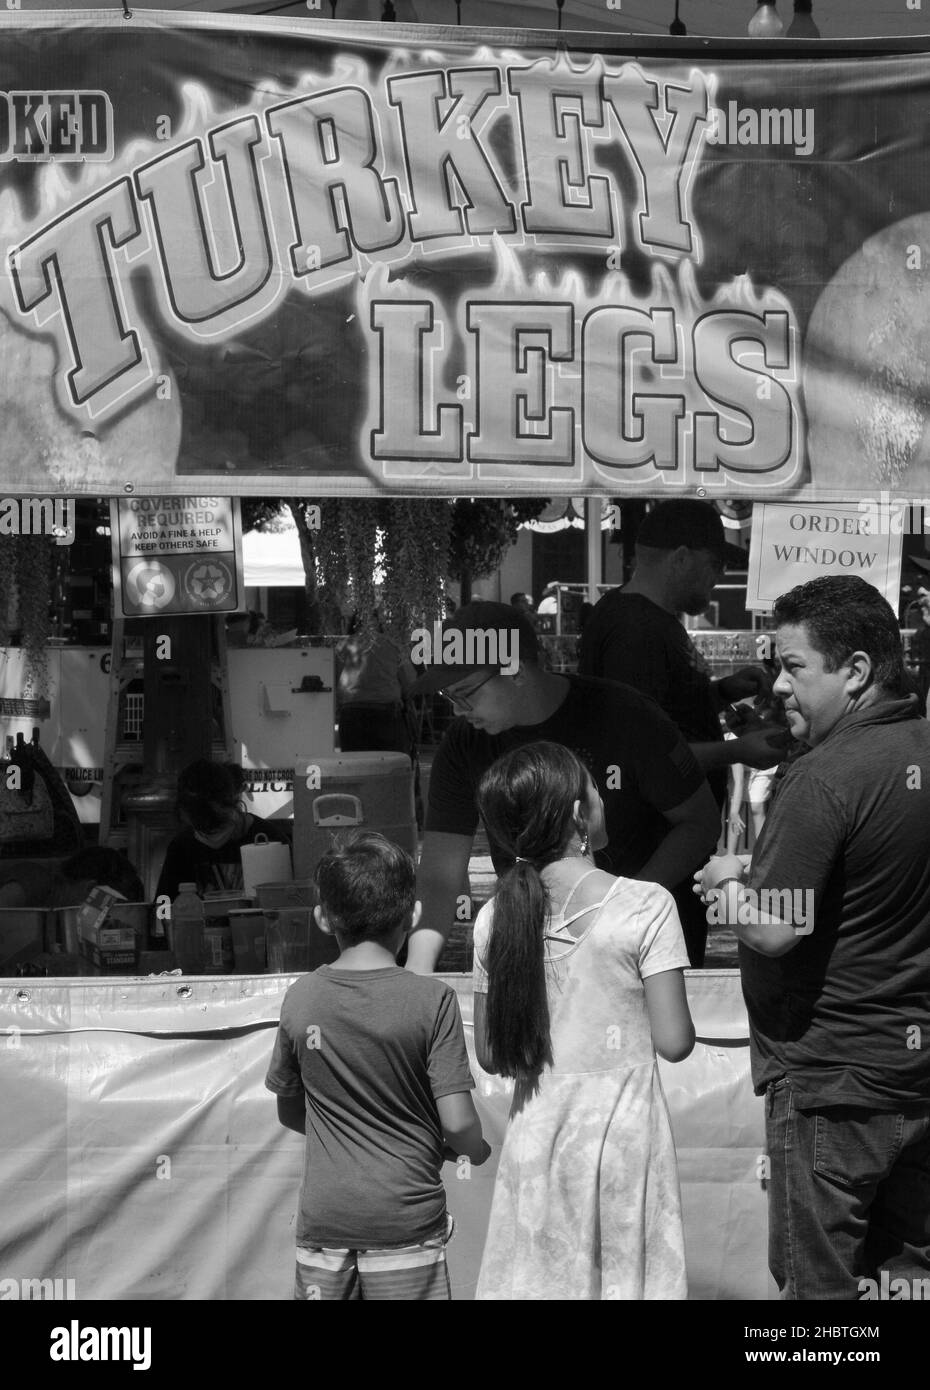 Un père achète des pattes de dinde fumées pour ses deux enfants à un vendeur de nourriture lors d'un festival en plein air à Santa Fe, Nouveau-Mexique. Banque D'Images